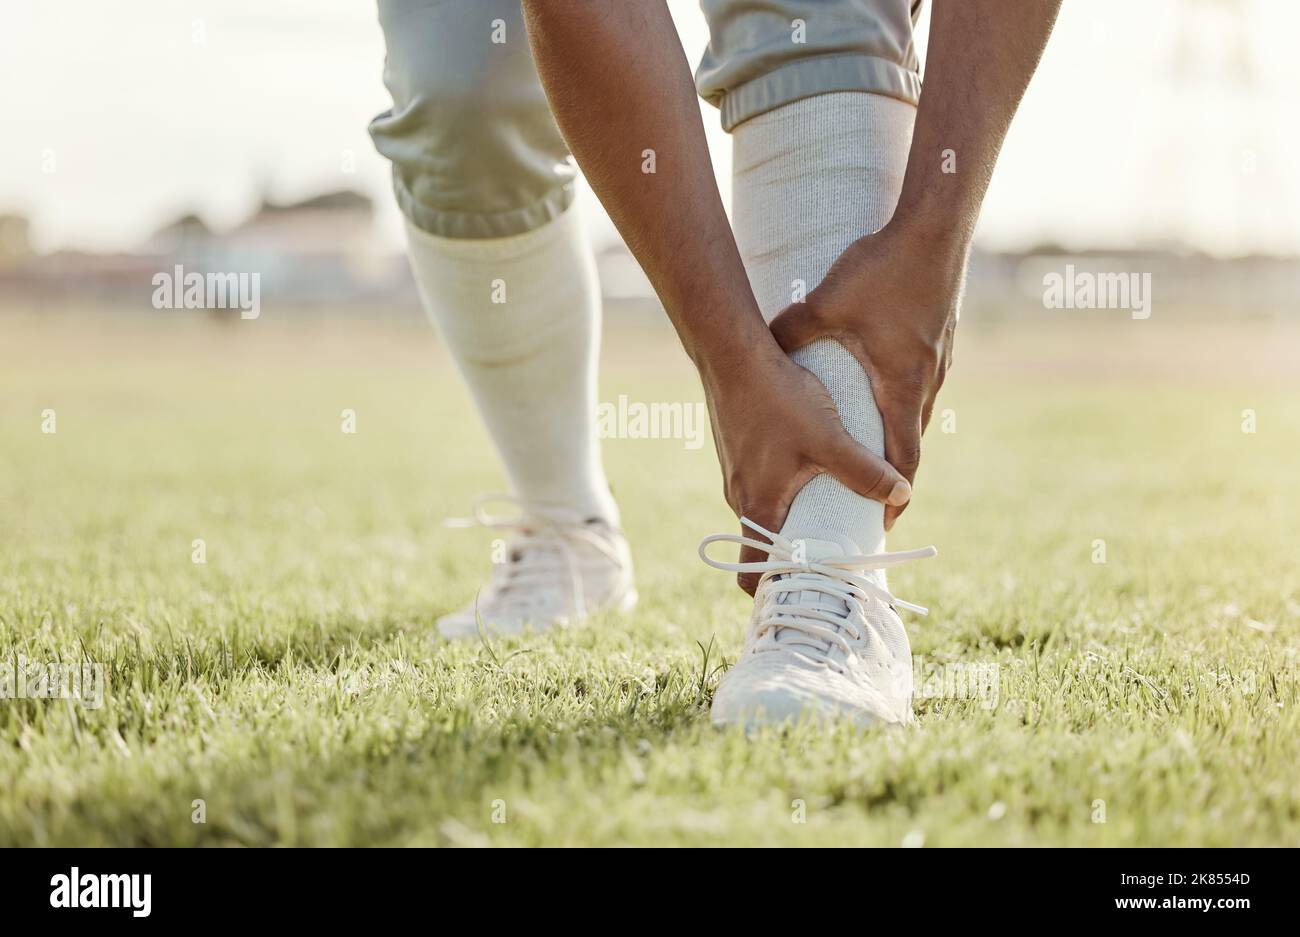 Sport, Feld und Mann mit Knöchelverletzung nach Spiel, Wettkampf oder Baseballtraining. Notfall, Trainingsunfall oder Sportler Beine in Schmerzen Stockfoto